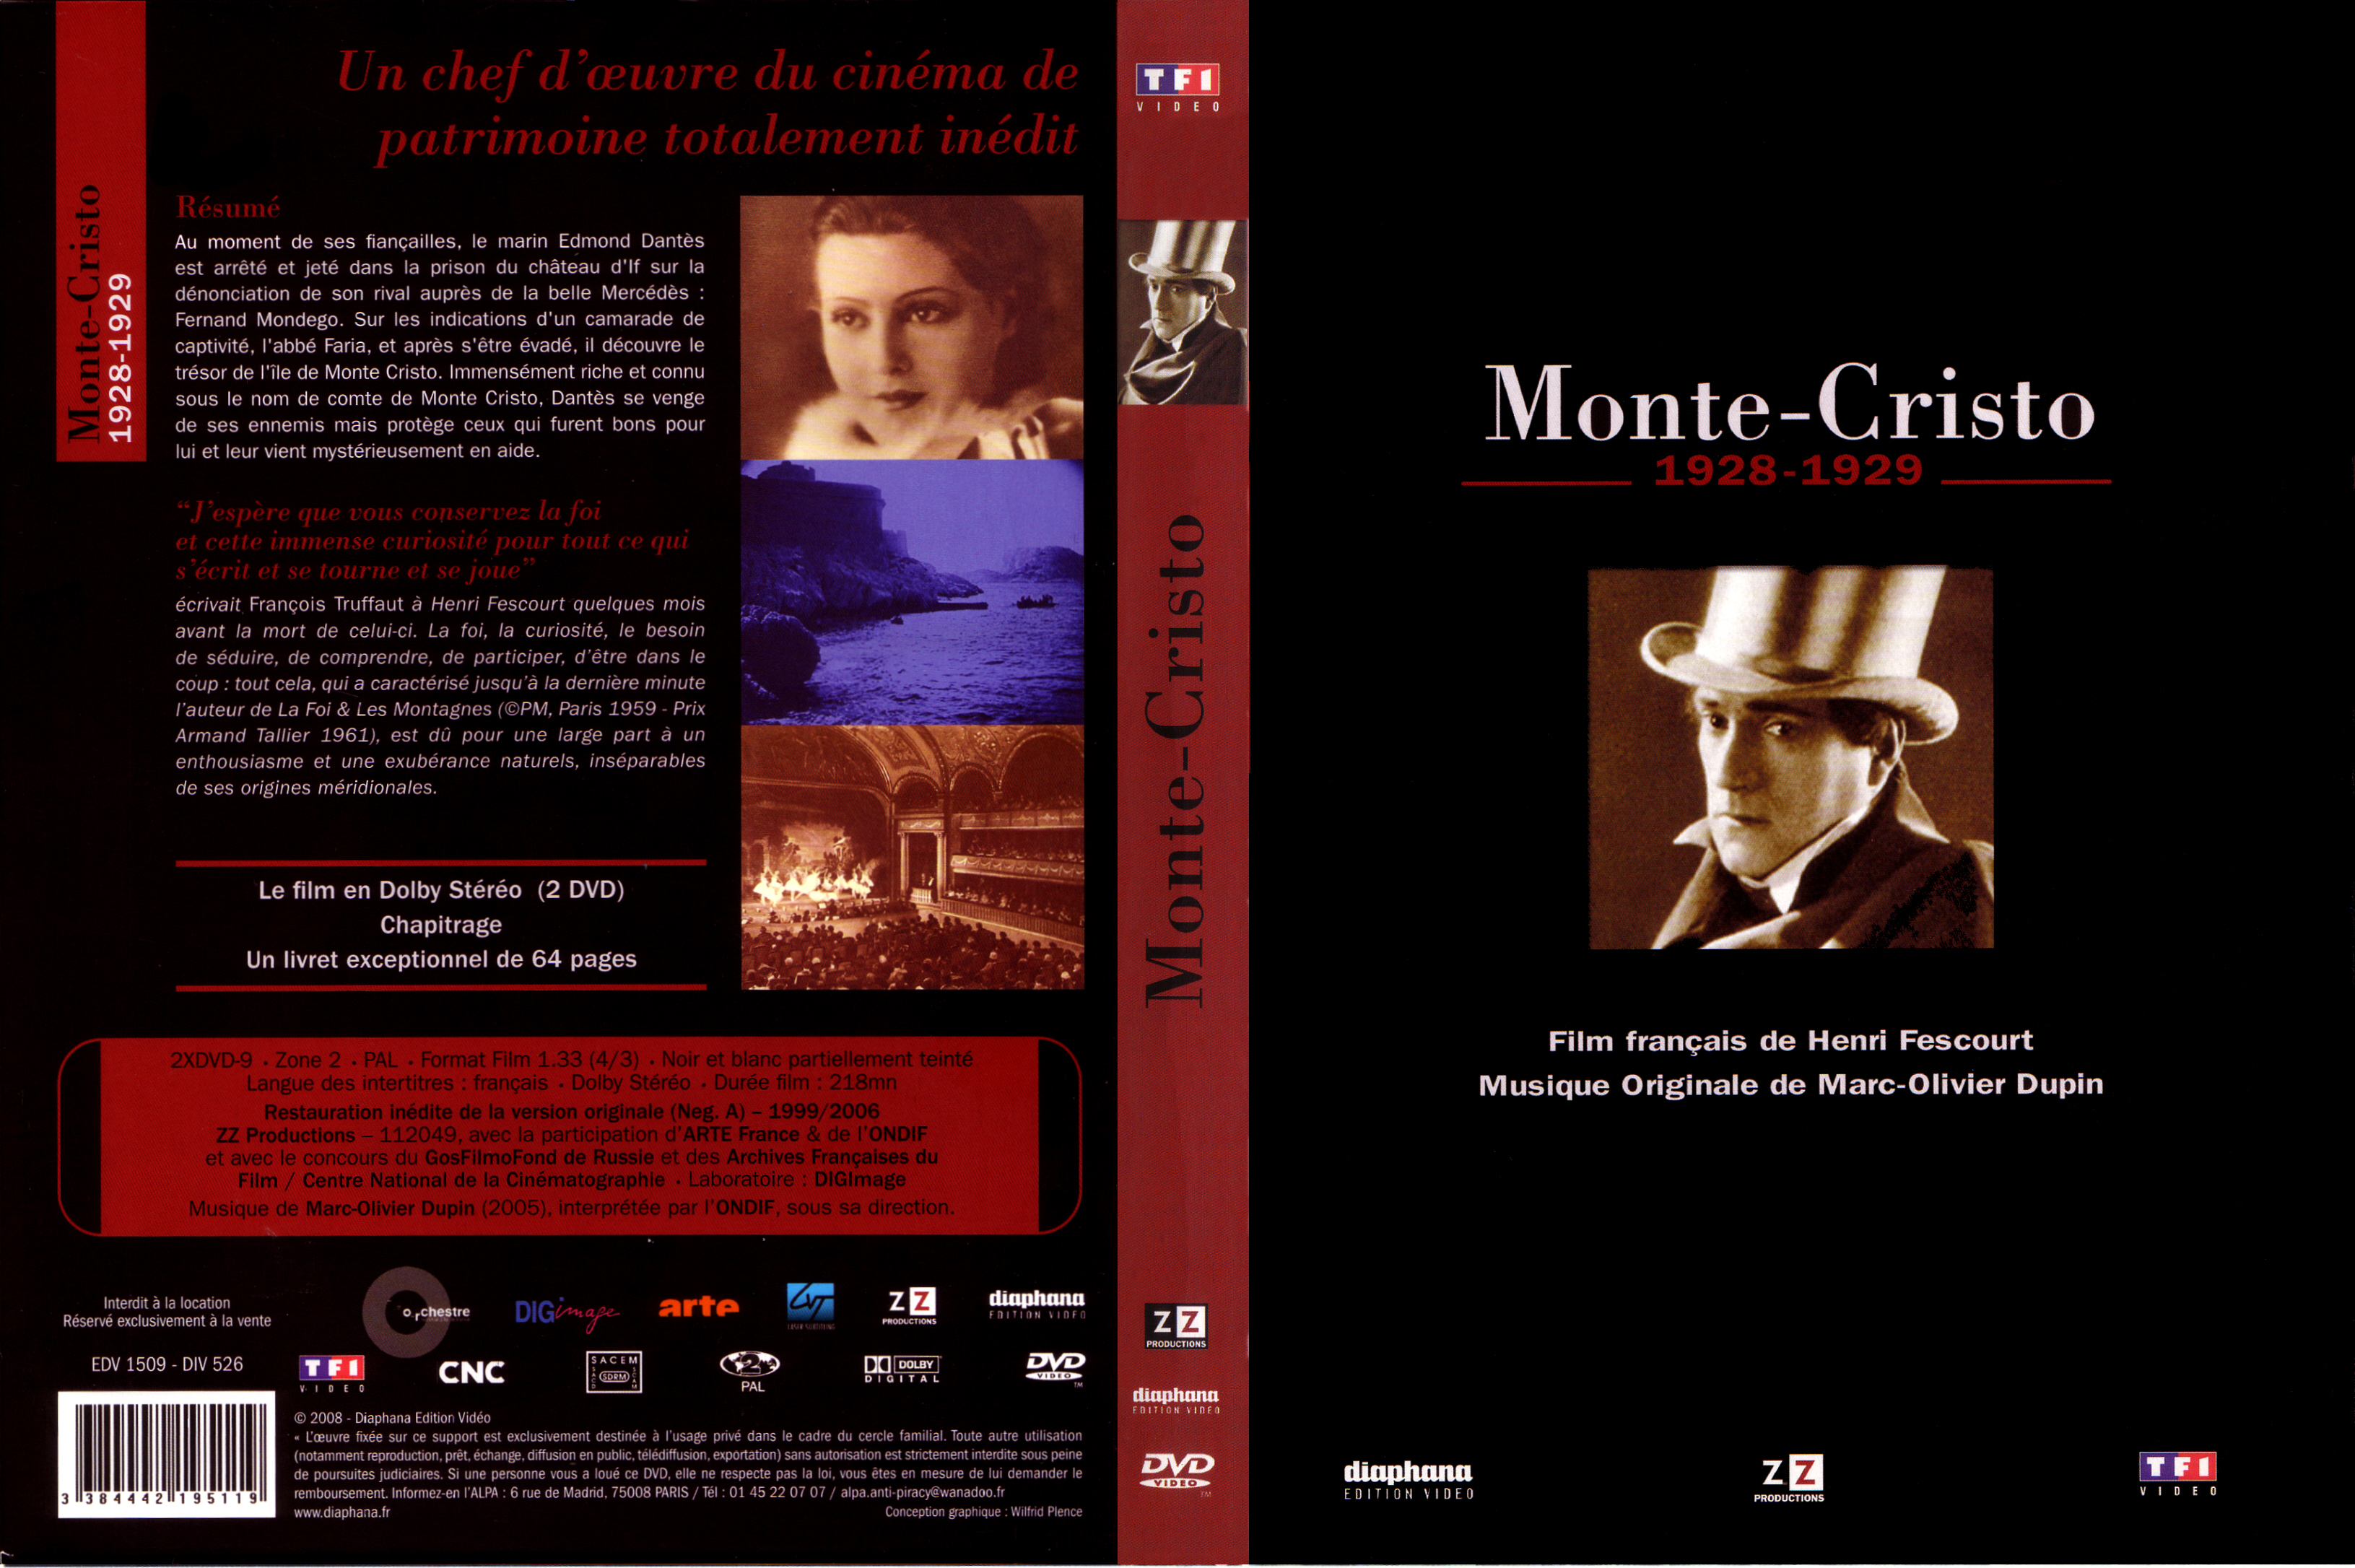 Jaquette DVD Monte-cristo 1928-1929